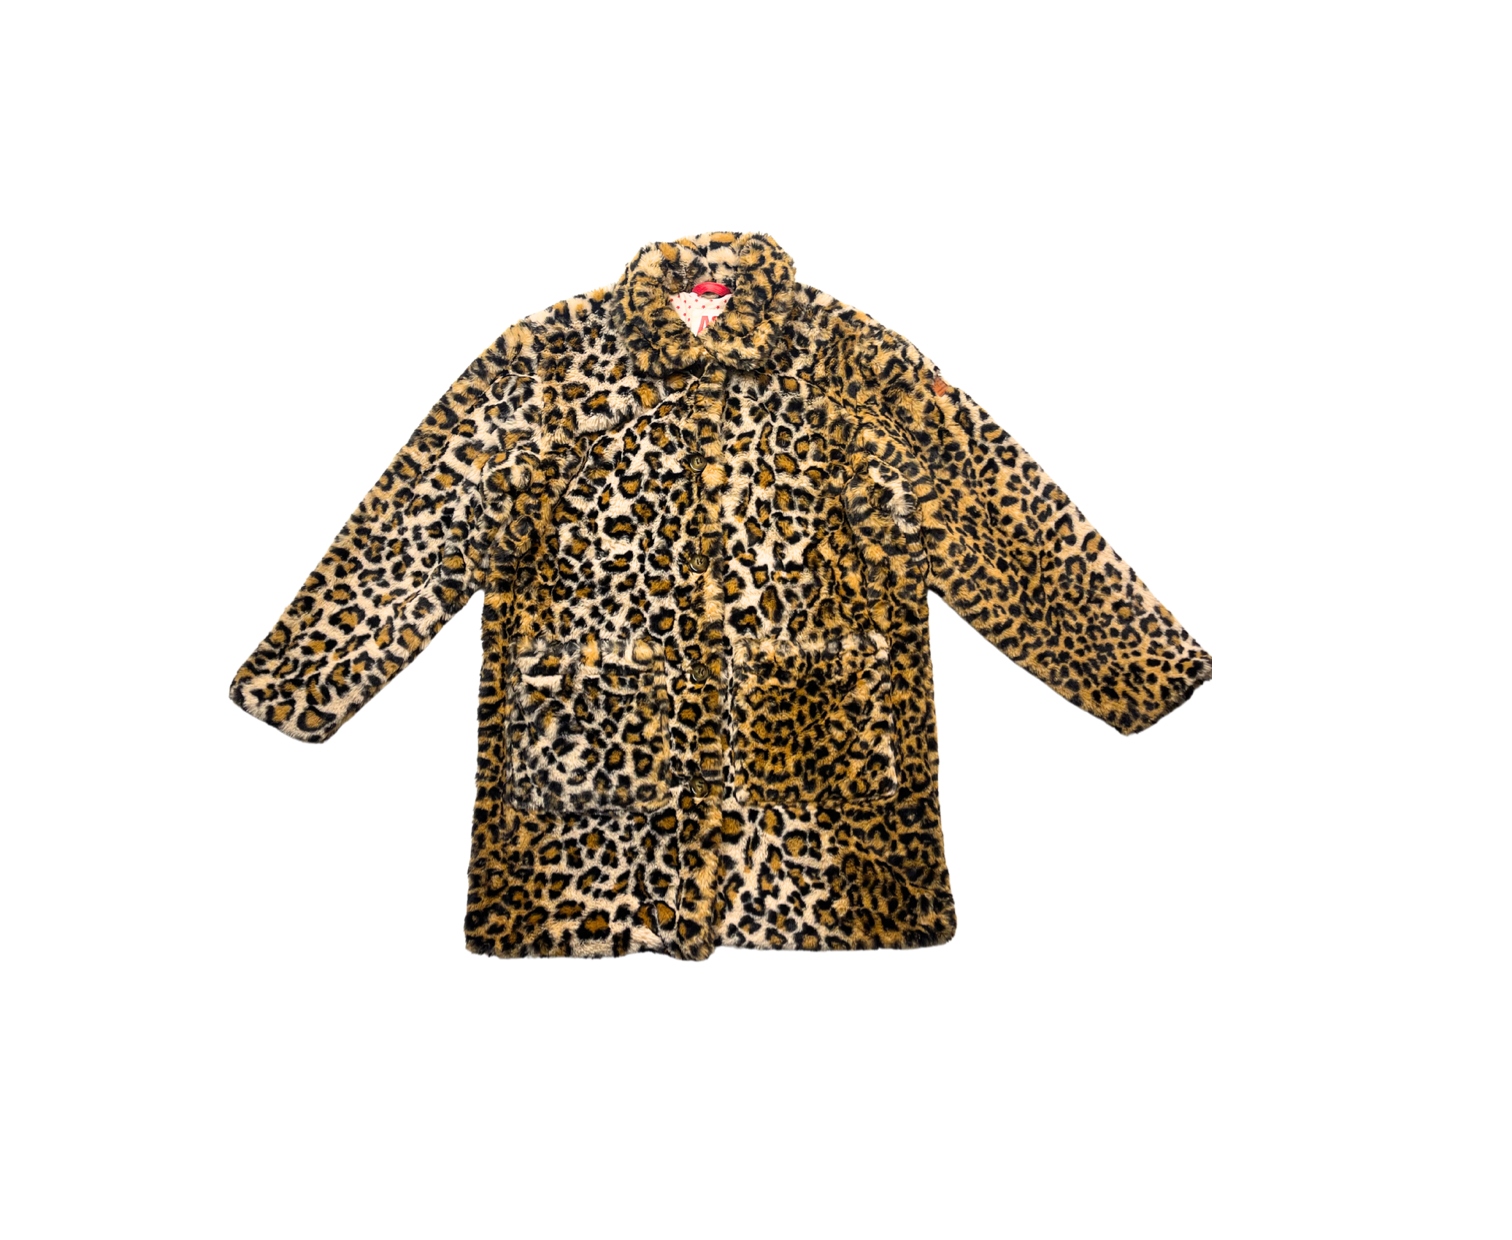 AO76 - Manteau fausse fourrure léopard - 12 ans